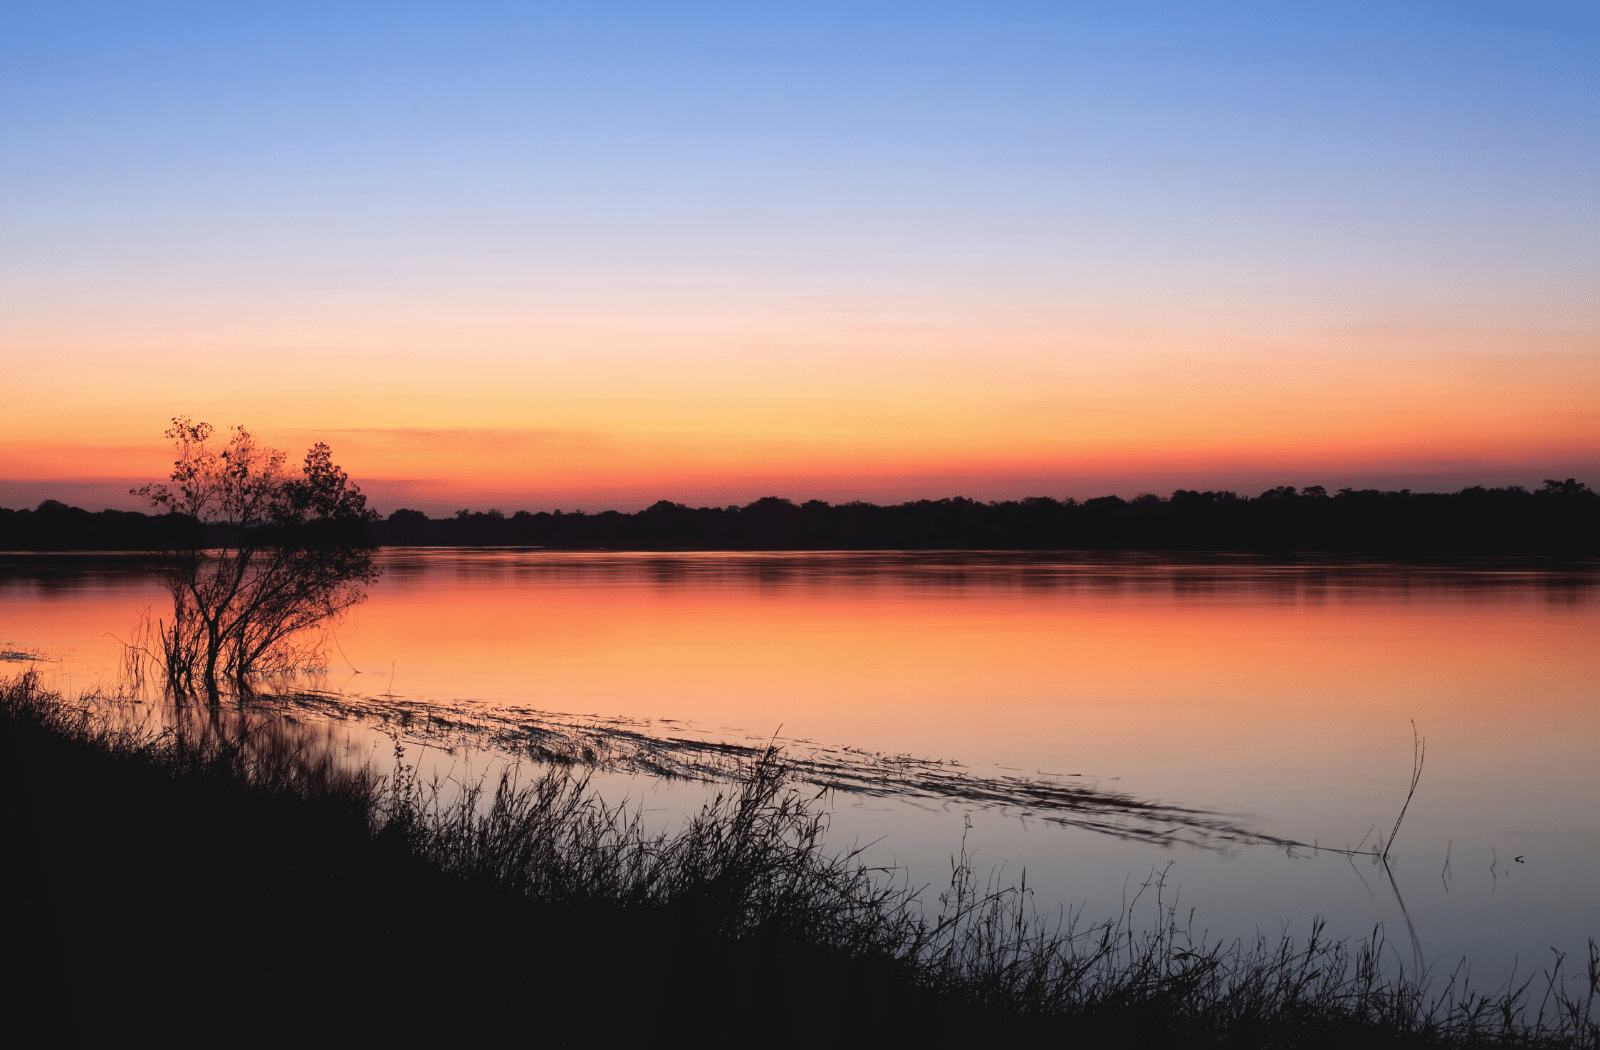 Sunset on the Zambezi River, Zimbabwe